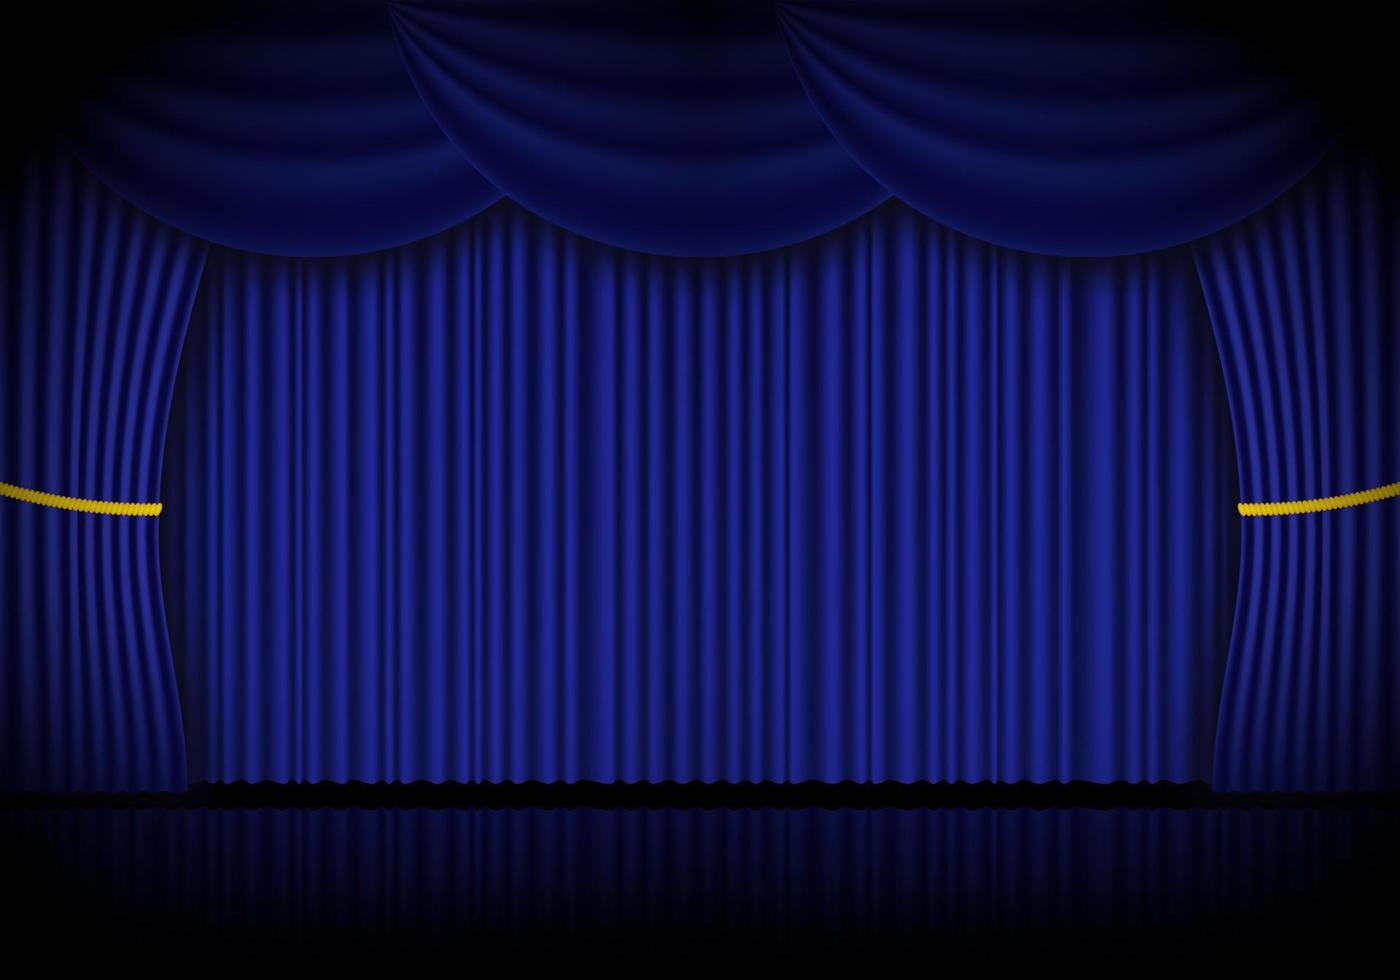 cortinas azules de ópera, cine o teatro. foco en el fondo de las cortinas de terciopelo cerradas. ilustración vectorial vector